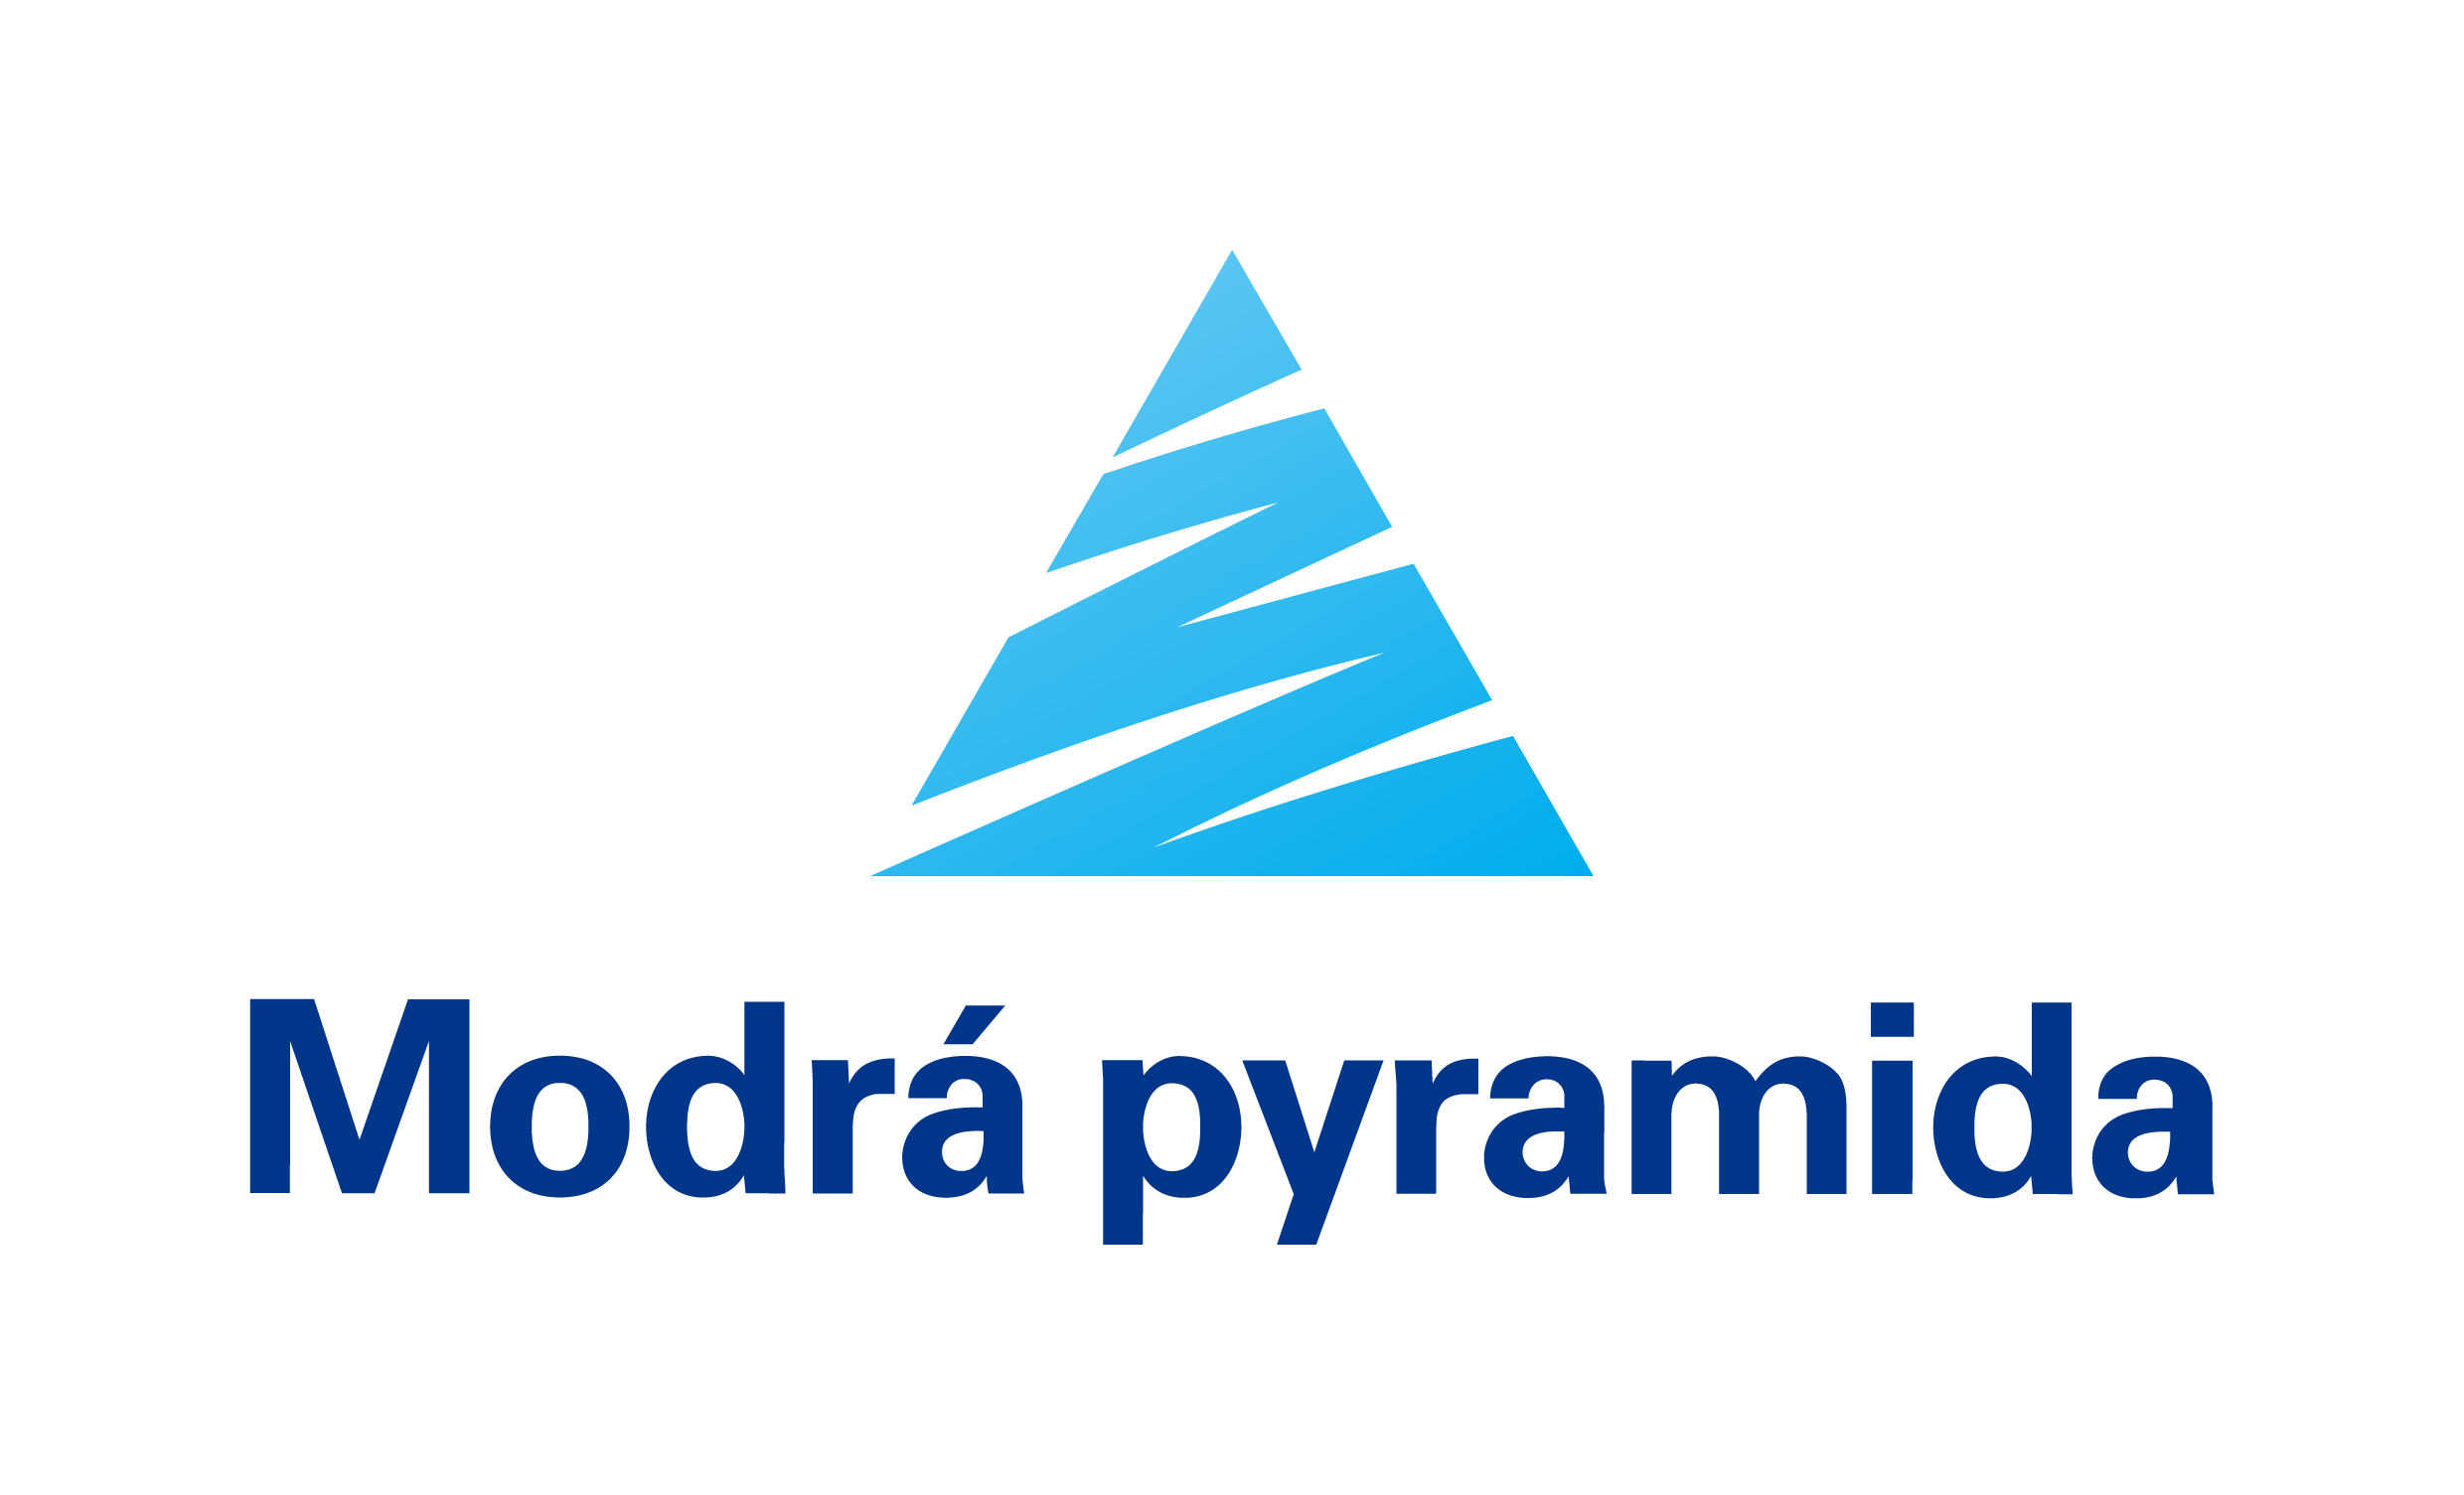 Modrá pyramida logo